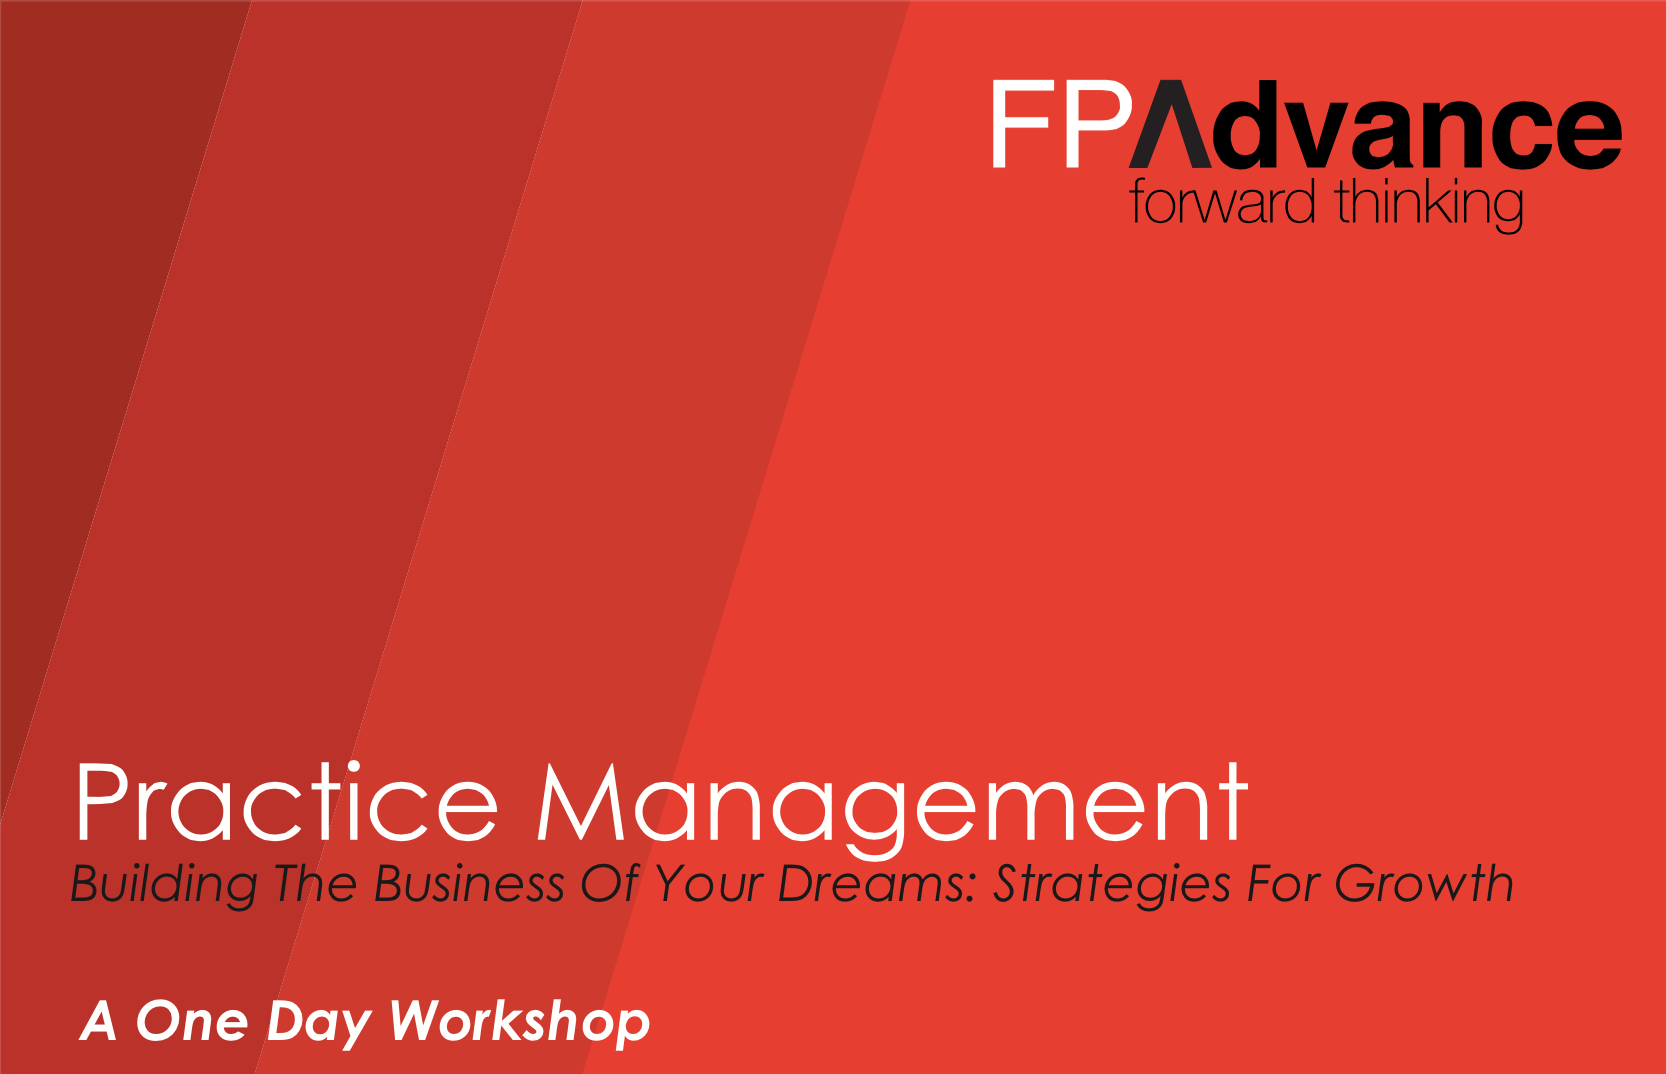 Practice Management Workshop - FP Advance